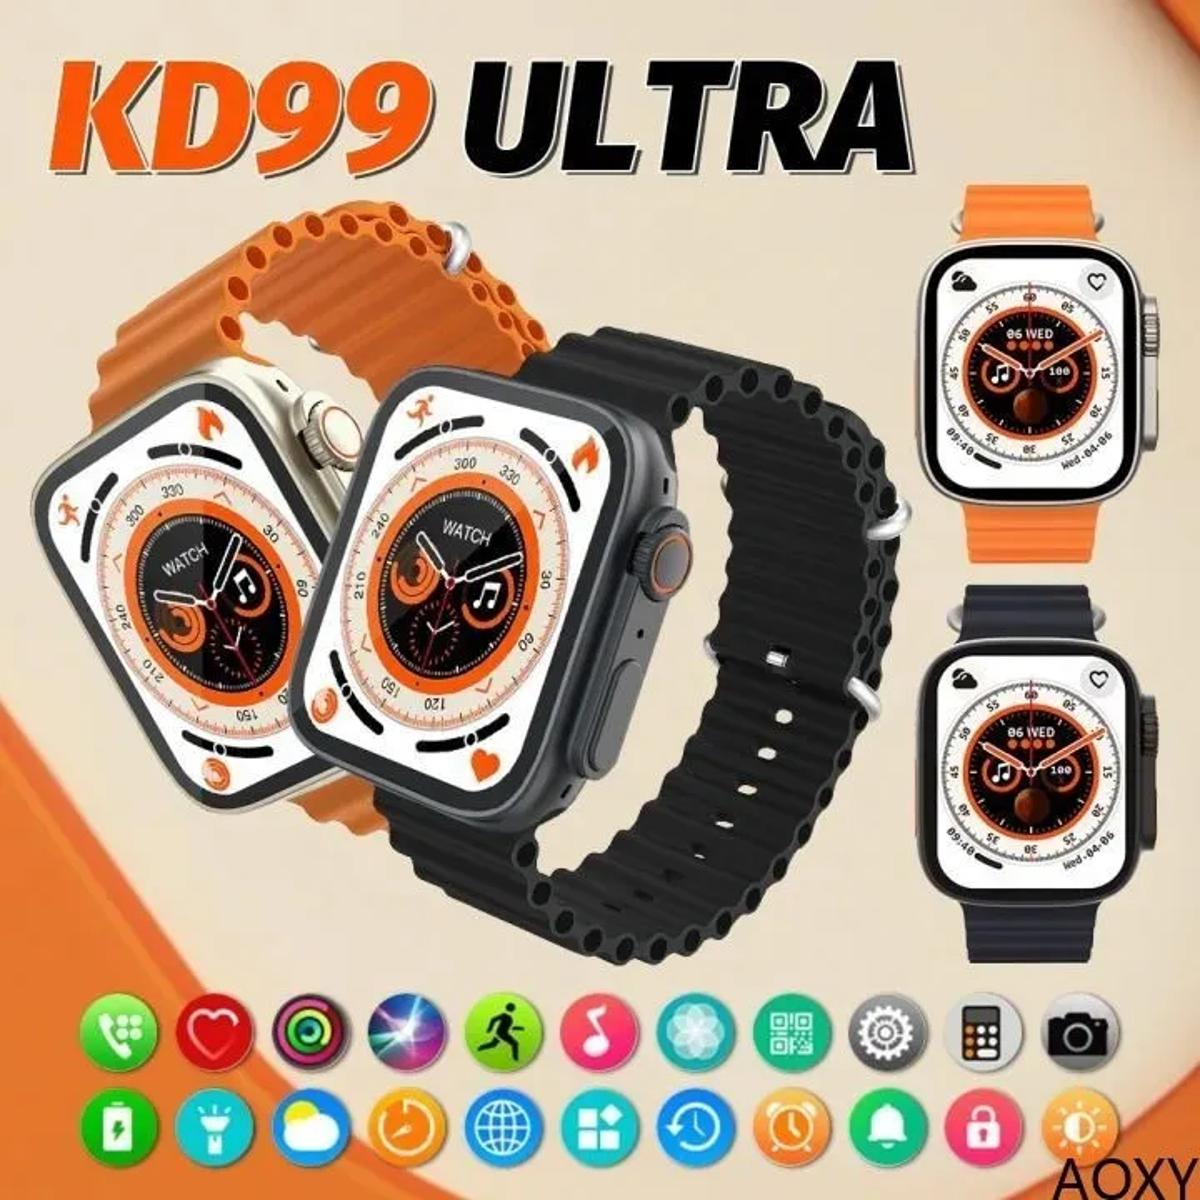 KD99 Ultra (Series 8) Smart Watch Price in Pakistan